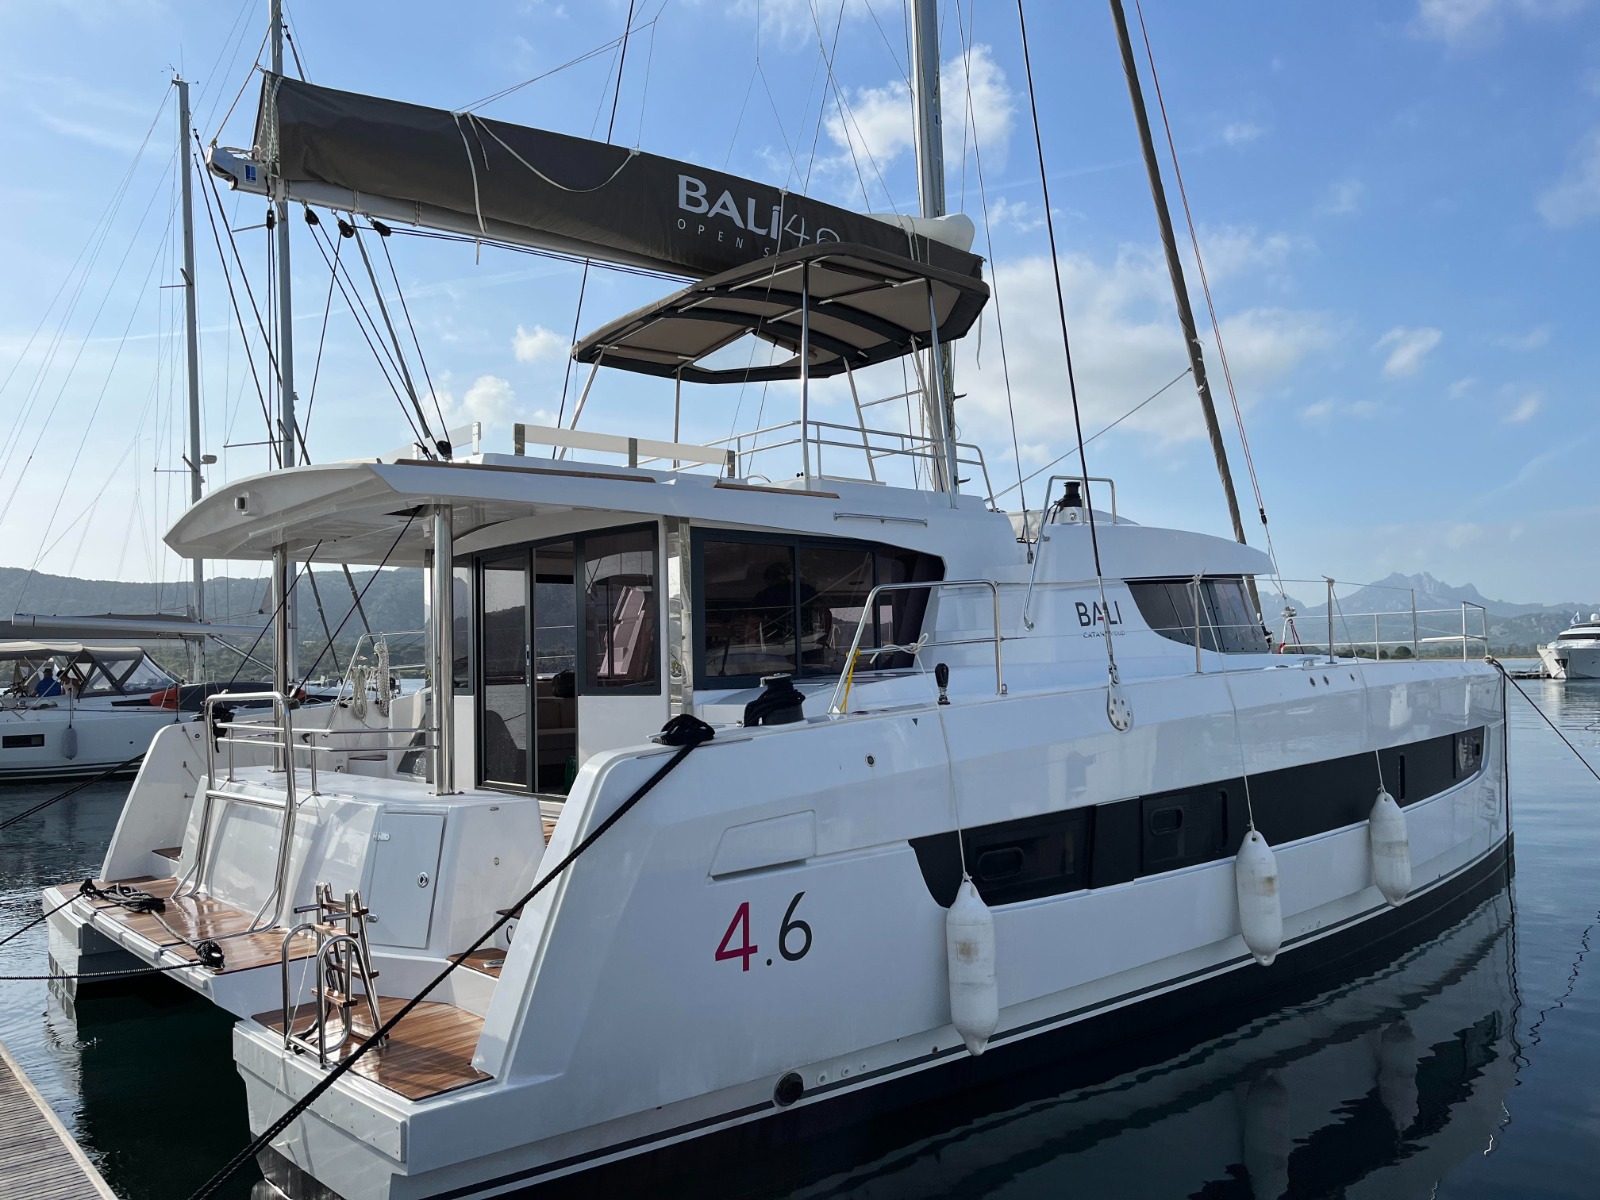 Bali 4.6 - Yacht Charter Cannigione & Boat hire in Italy Sardinia Costa Smeralda Cannigione Cannigione 2